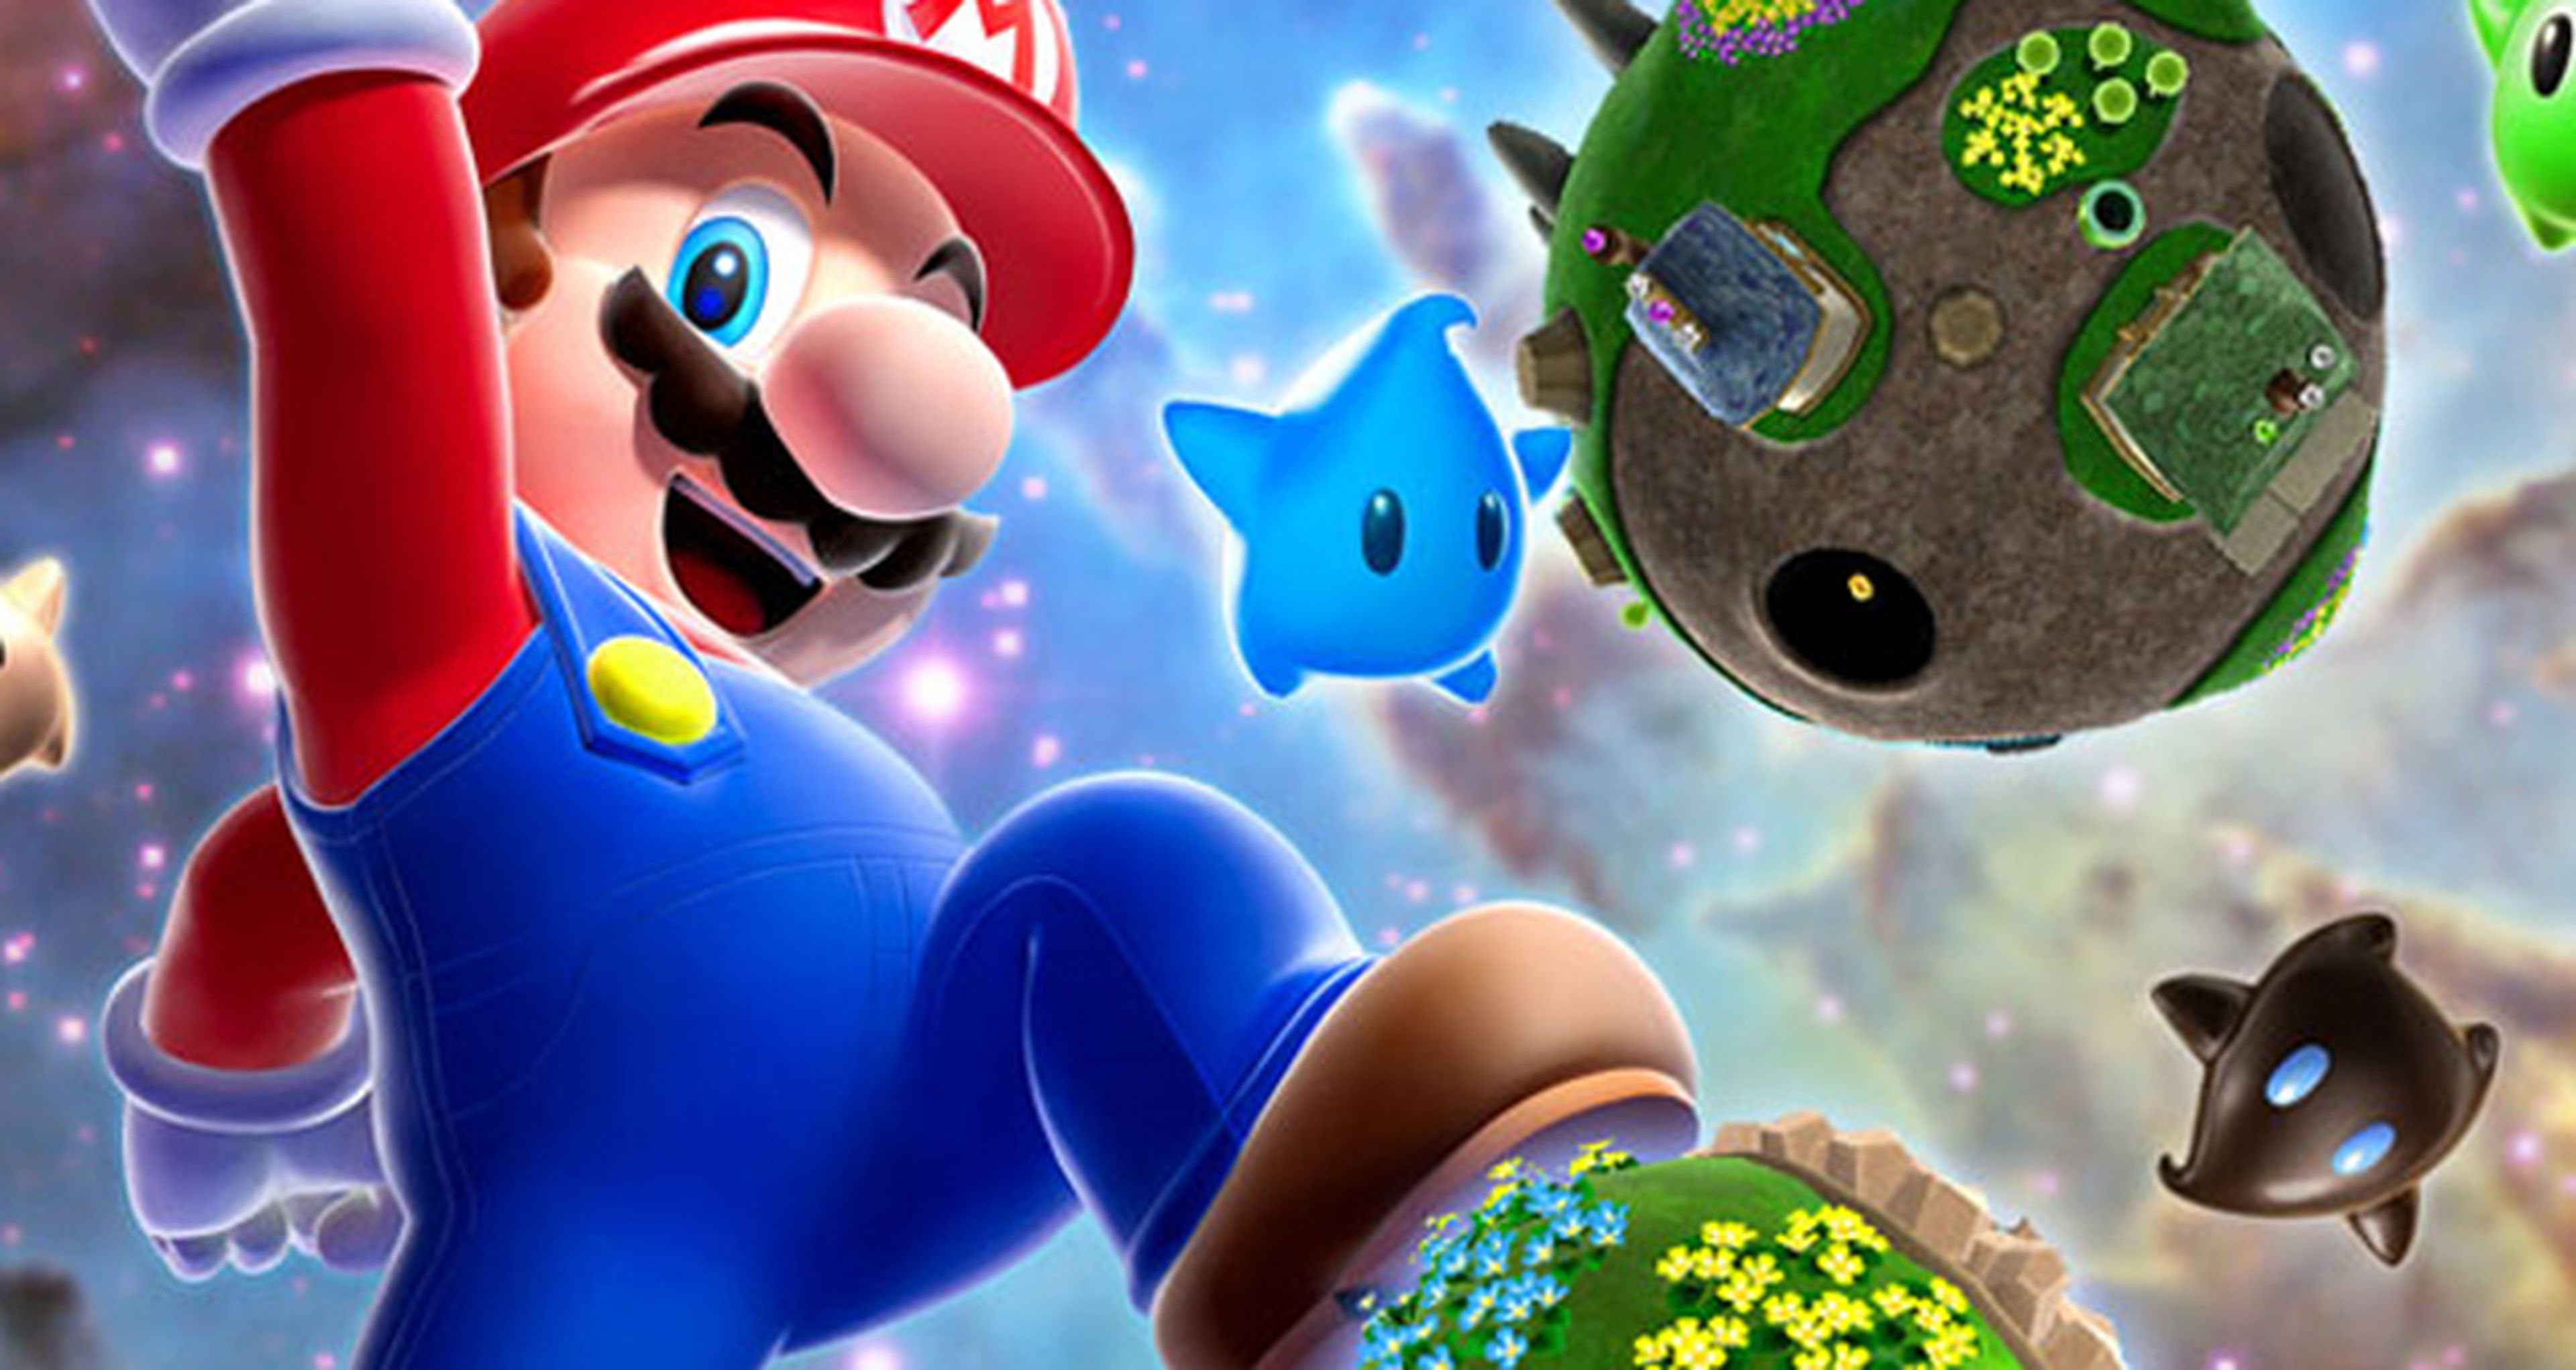 El próximo Mario 3D para Wii U, en navidades